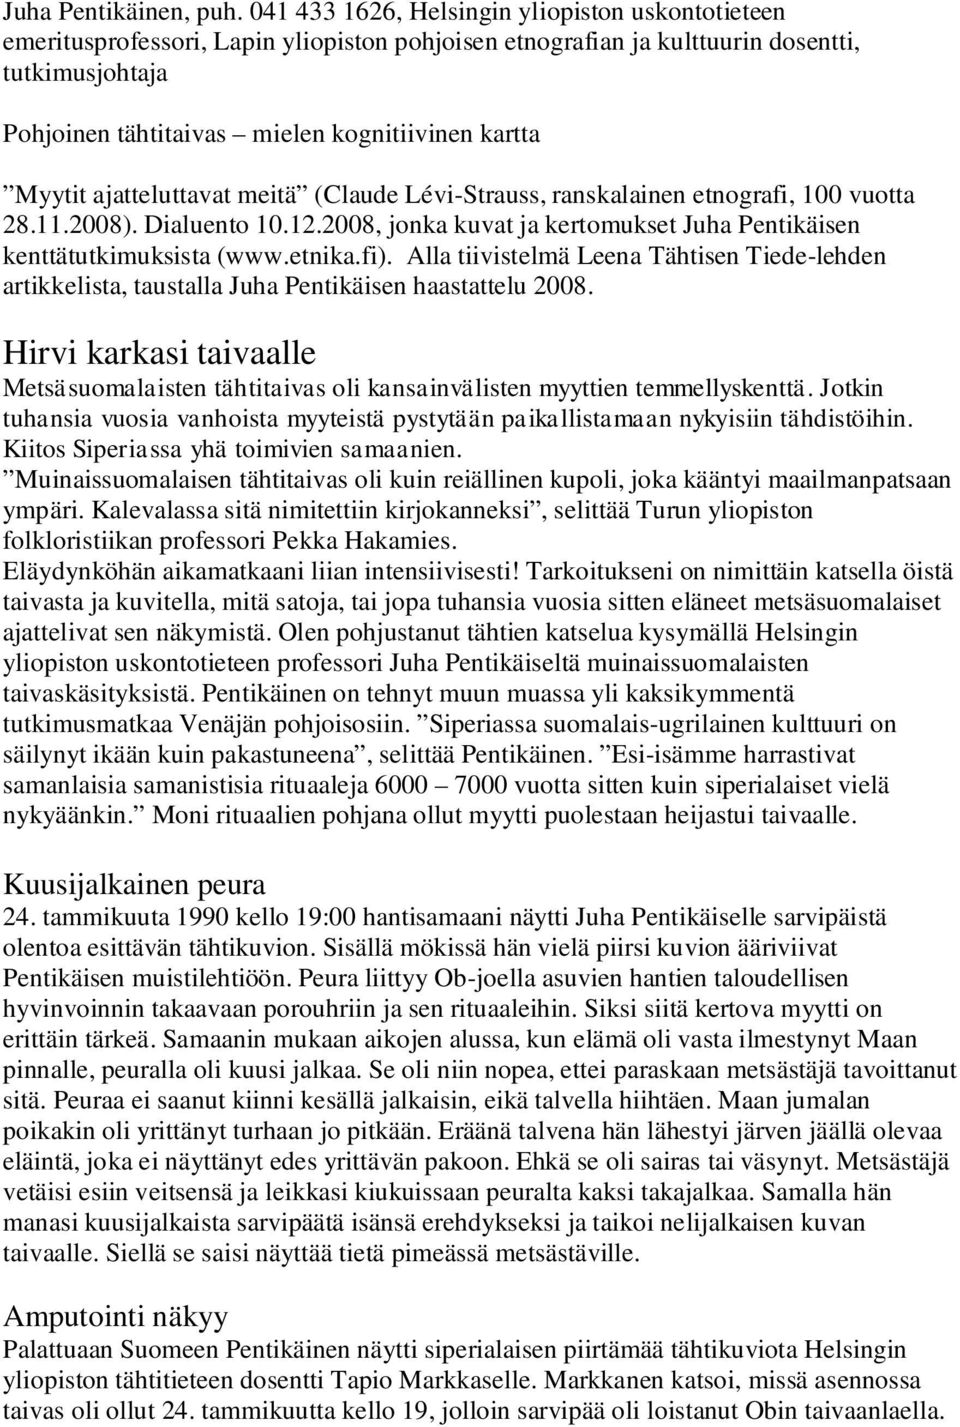 Myytit ajatteluttavat meitä (Claude Lévi-Strauss, ranskalainen etnografi, 100 vuotta 28.11.2008). Dialuento 10.12.2008, jonka kuvat ja kertomukset Juha Pentikäisen kenttätutkimuksista (www.etnika.fi).